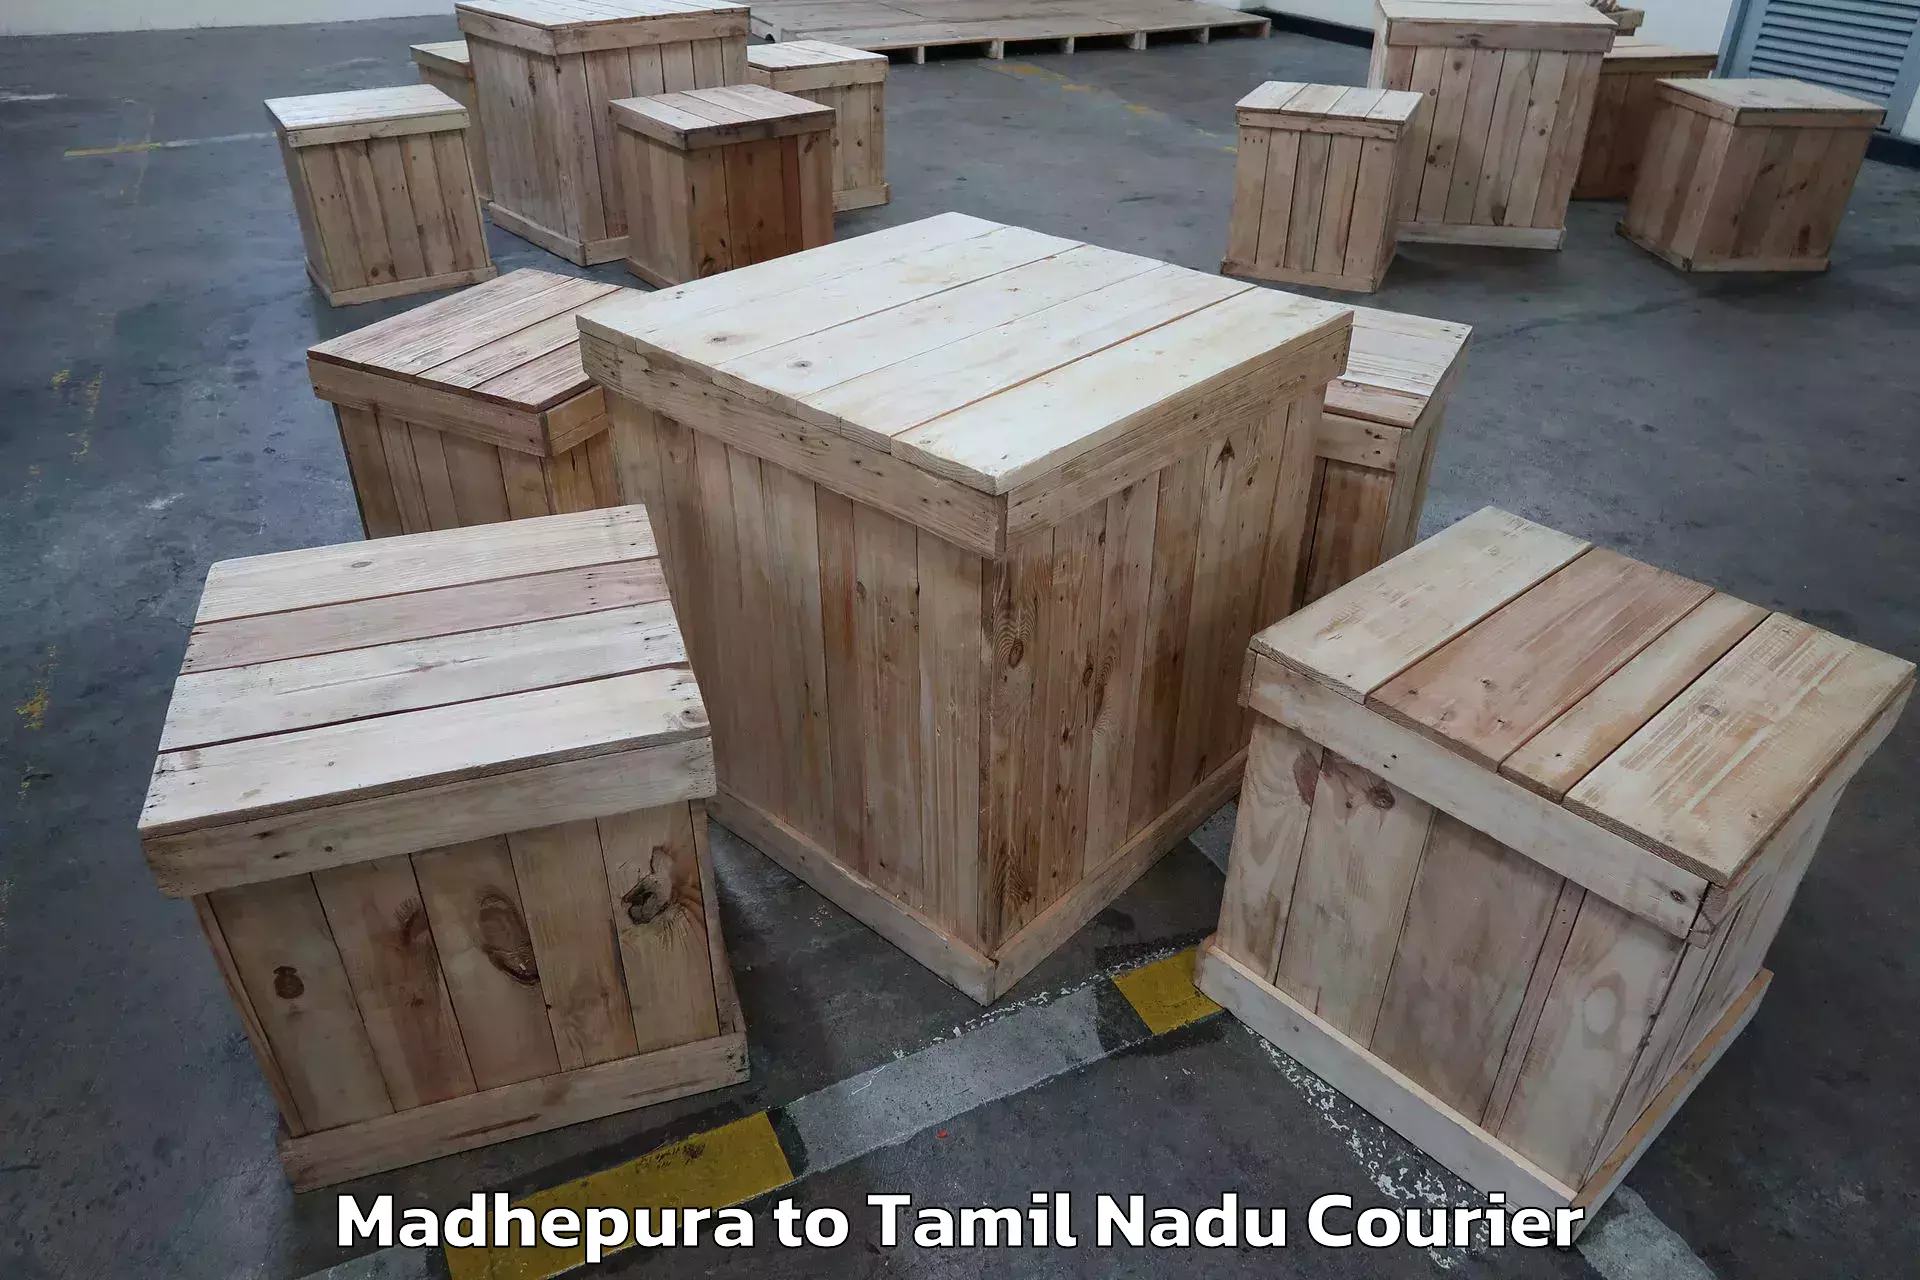 Residential moving experts Madhepura to Papanasam